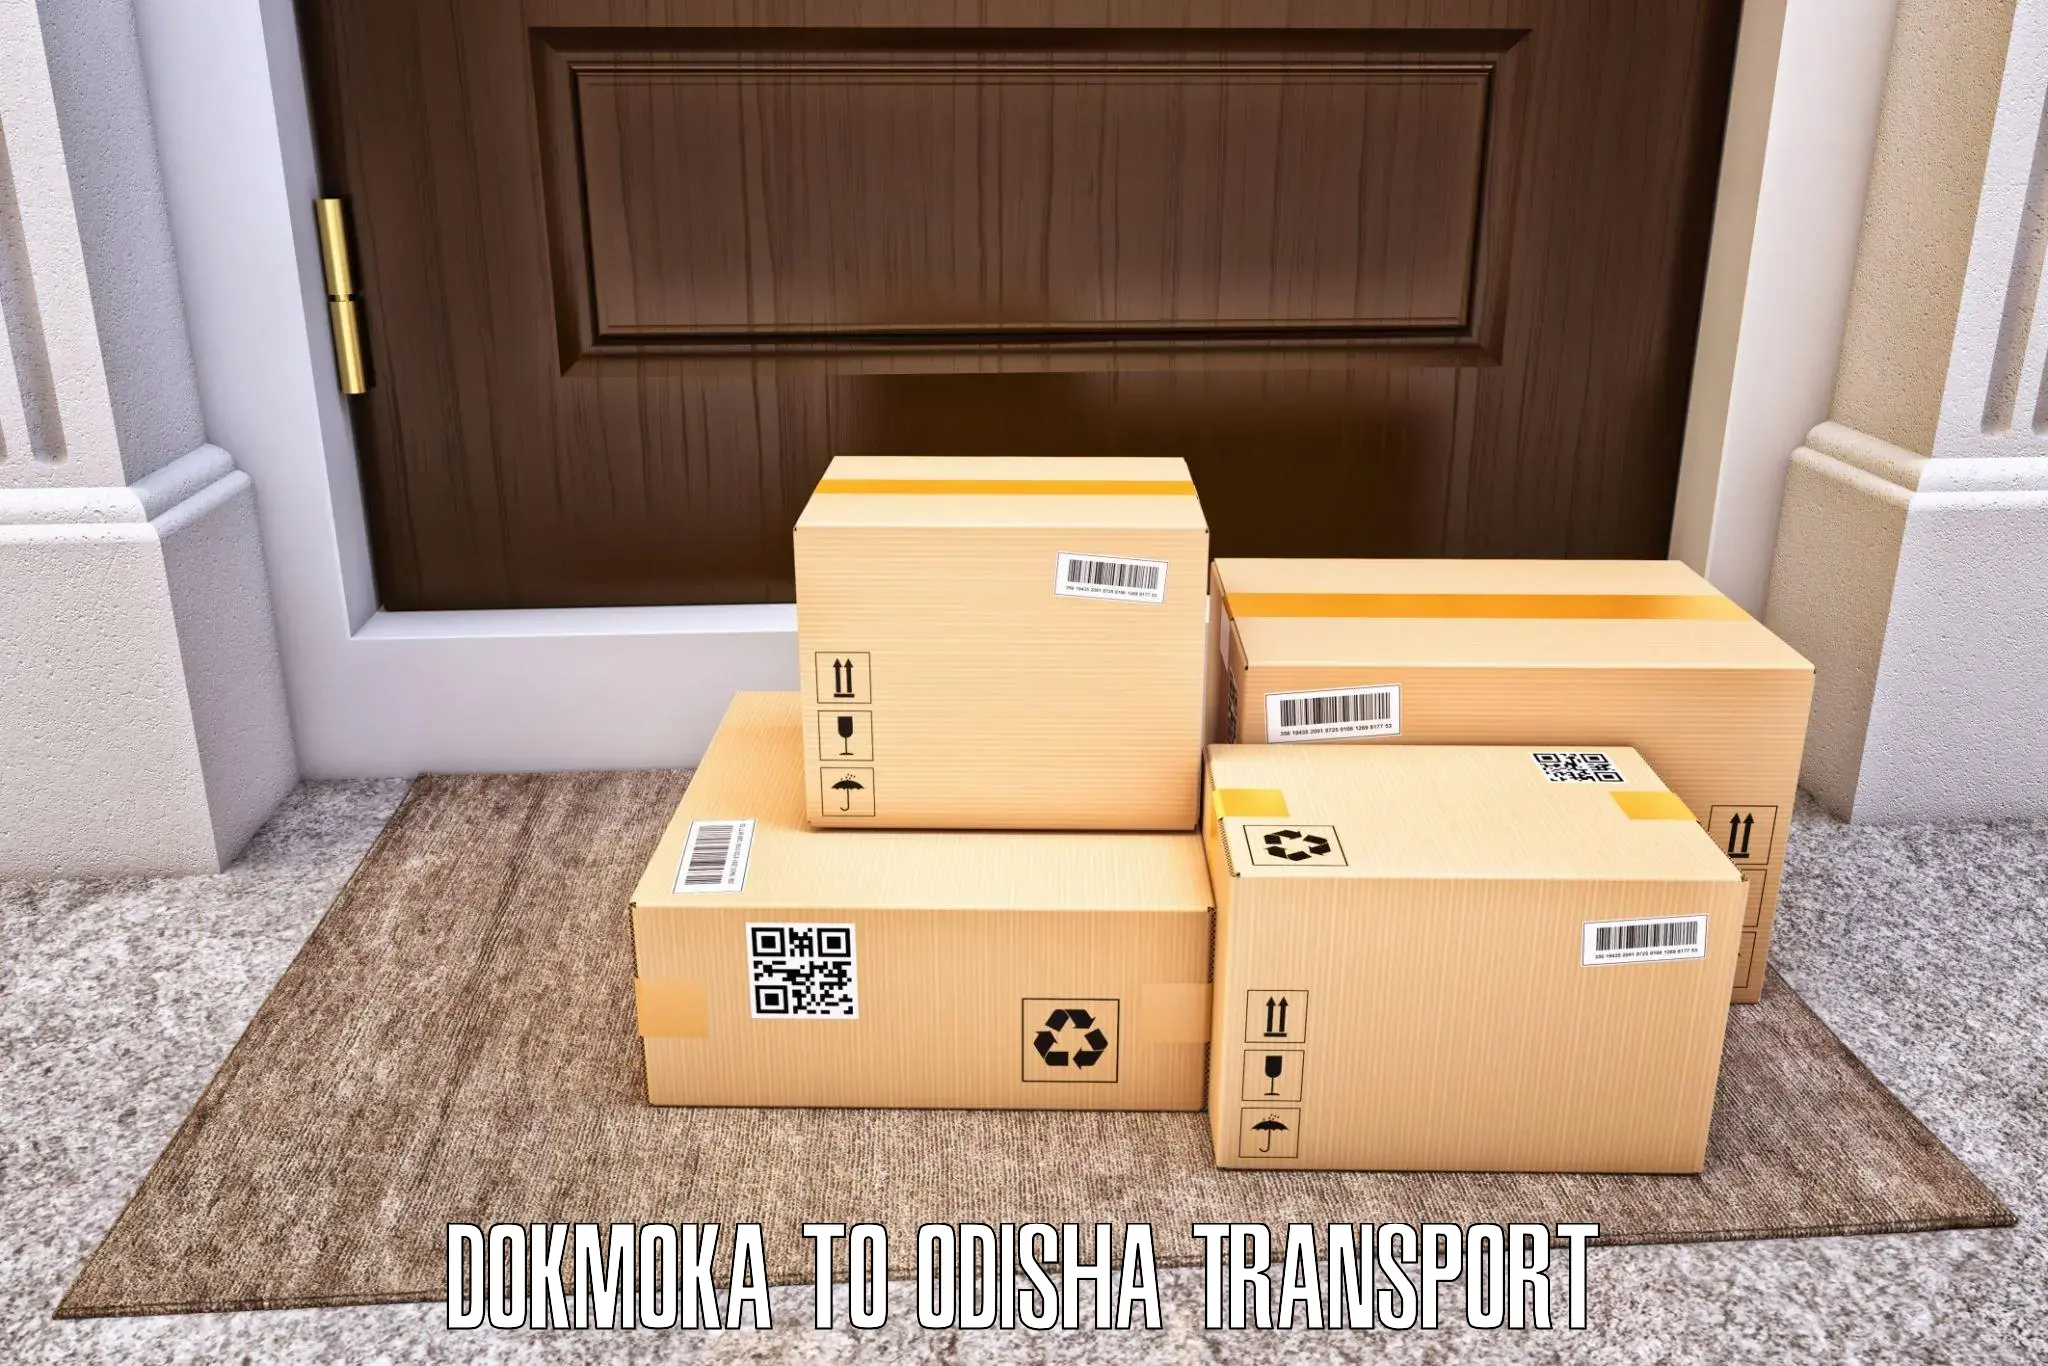 Commercial transport service in Dokmoka to Nimapara